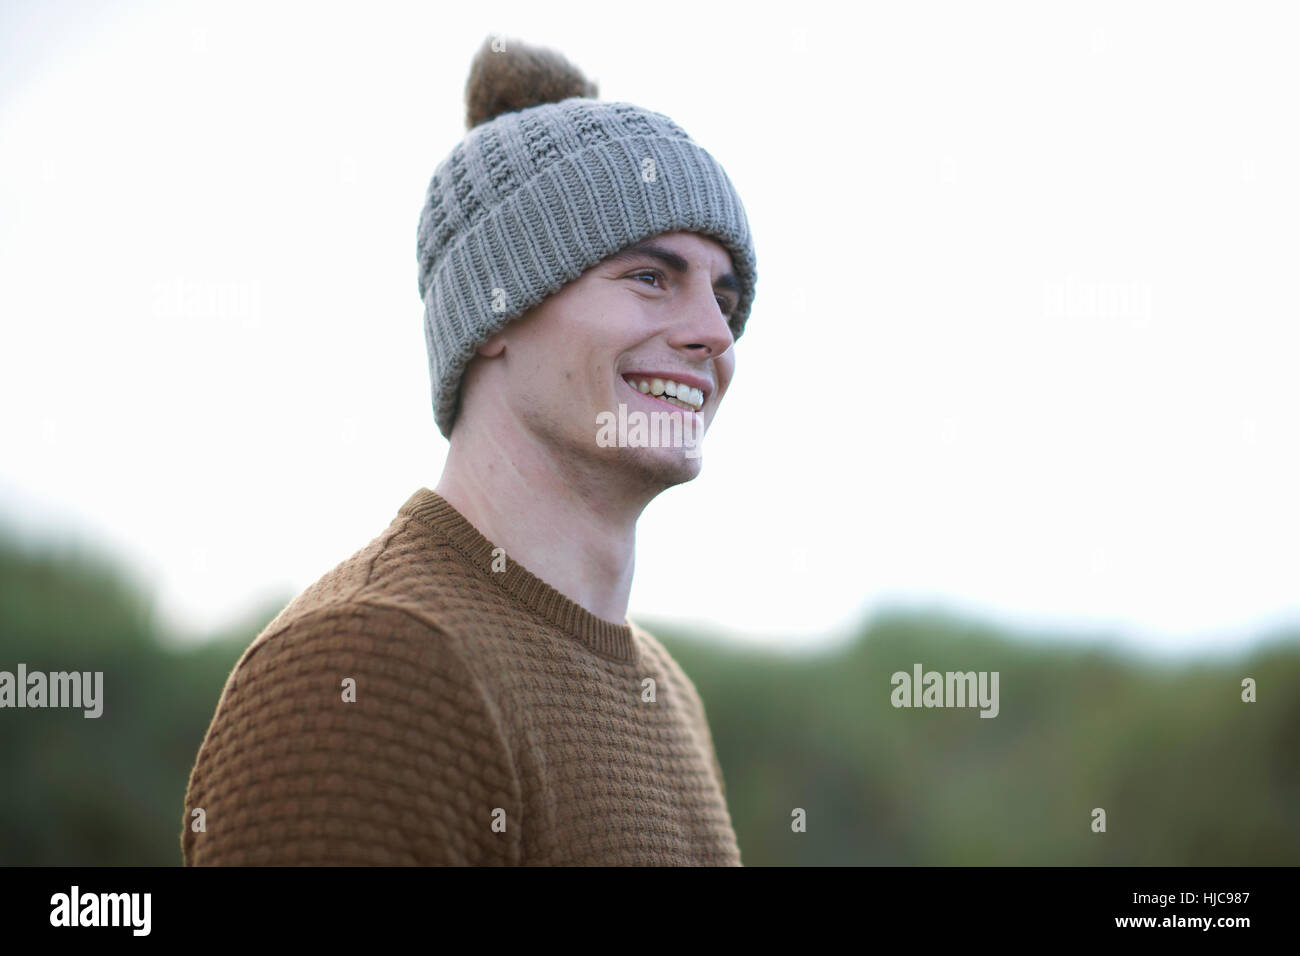 Portrait of happy man wearing beanie Stock Photo - Alamy